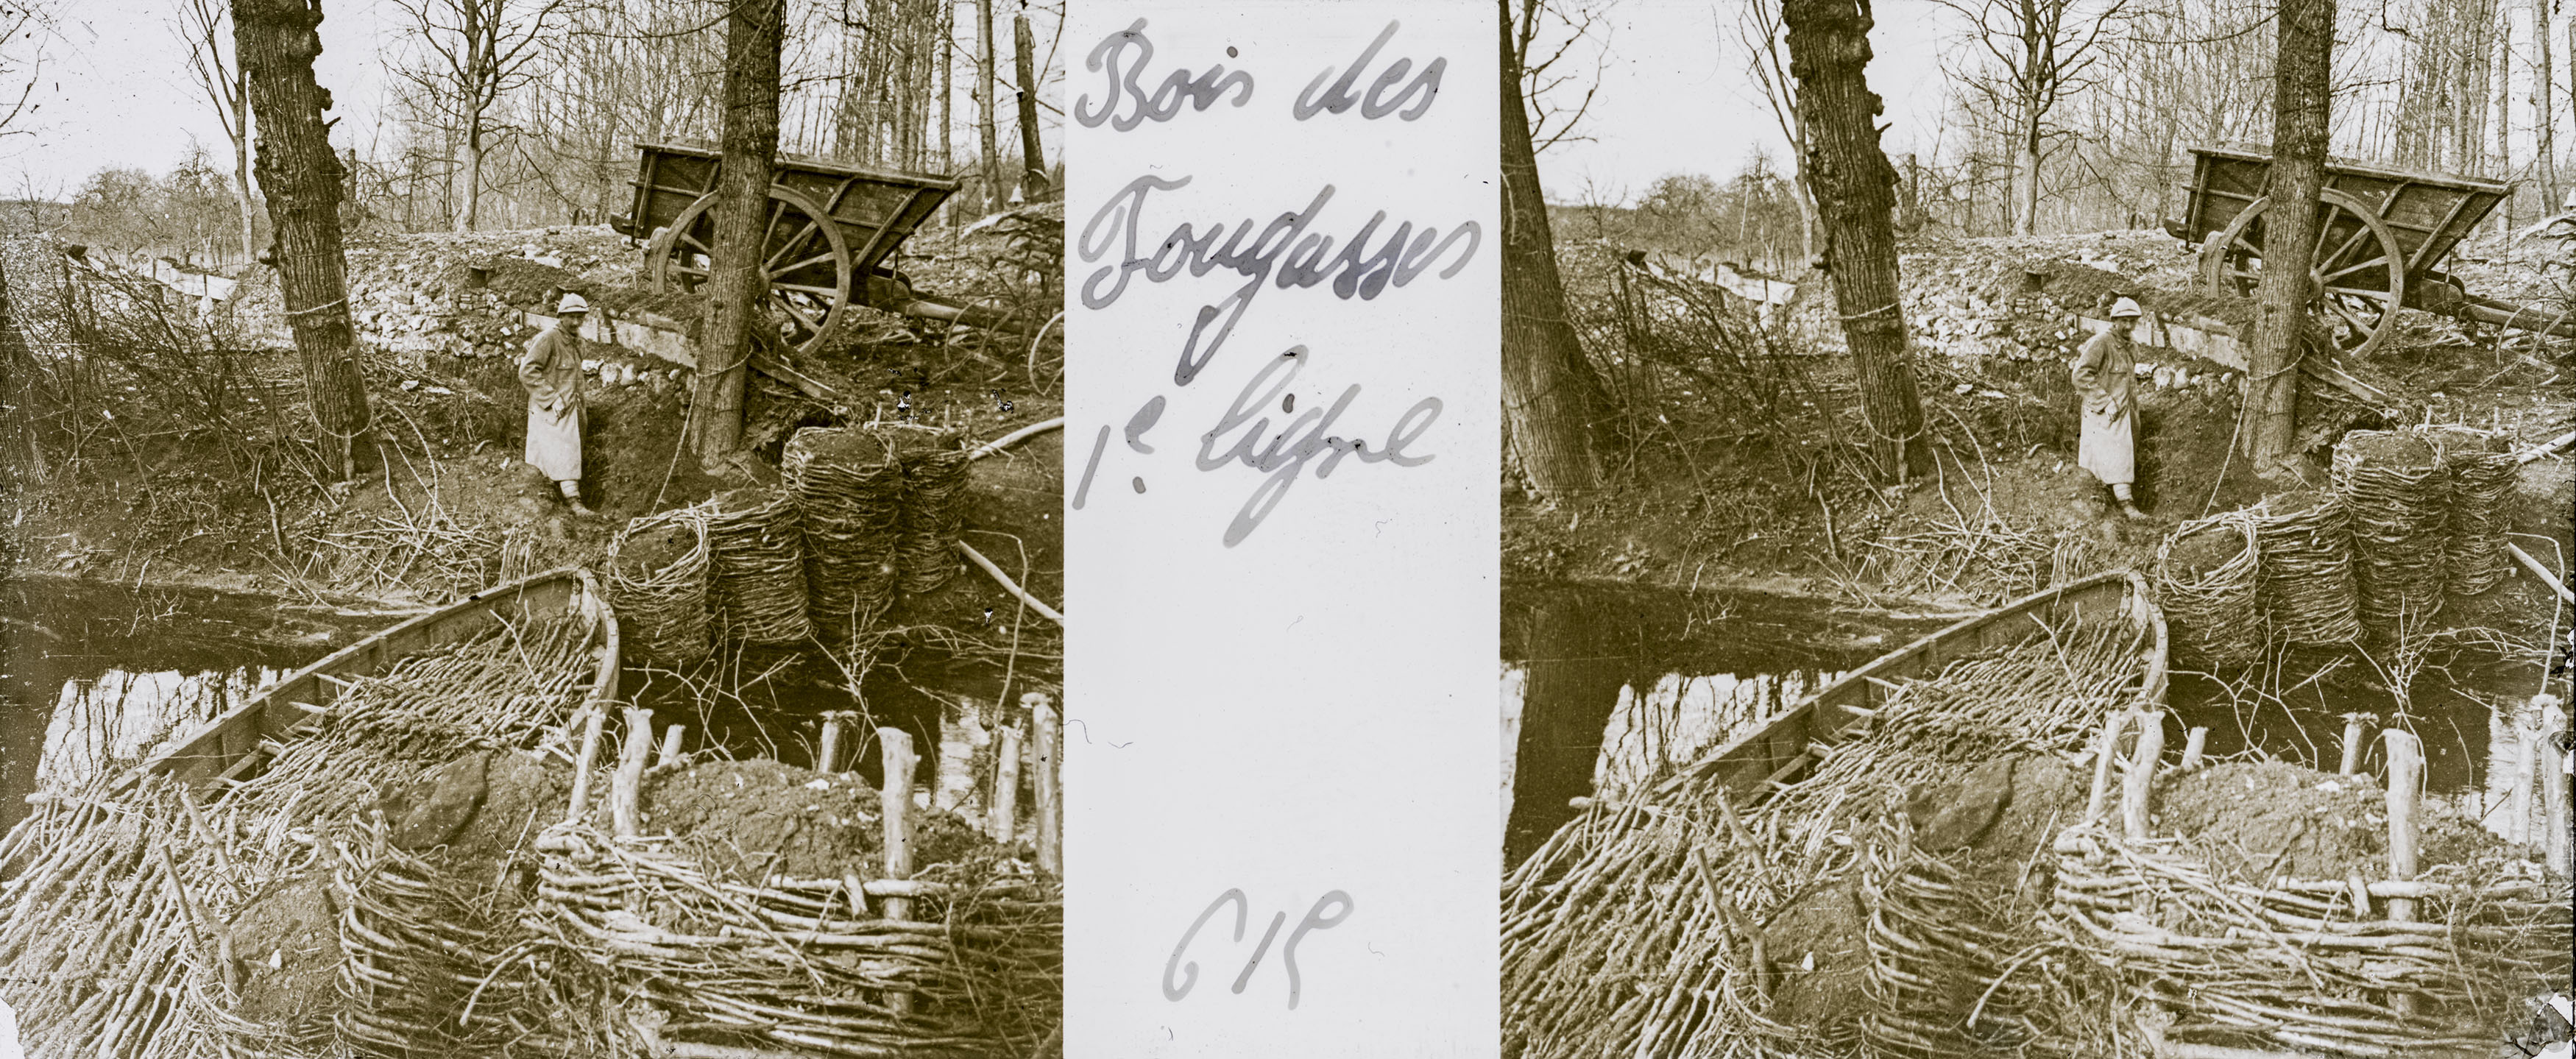 Bois des Fougasses 1er ligne - Fougasses Wood front line